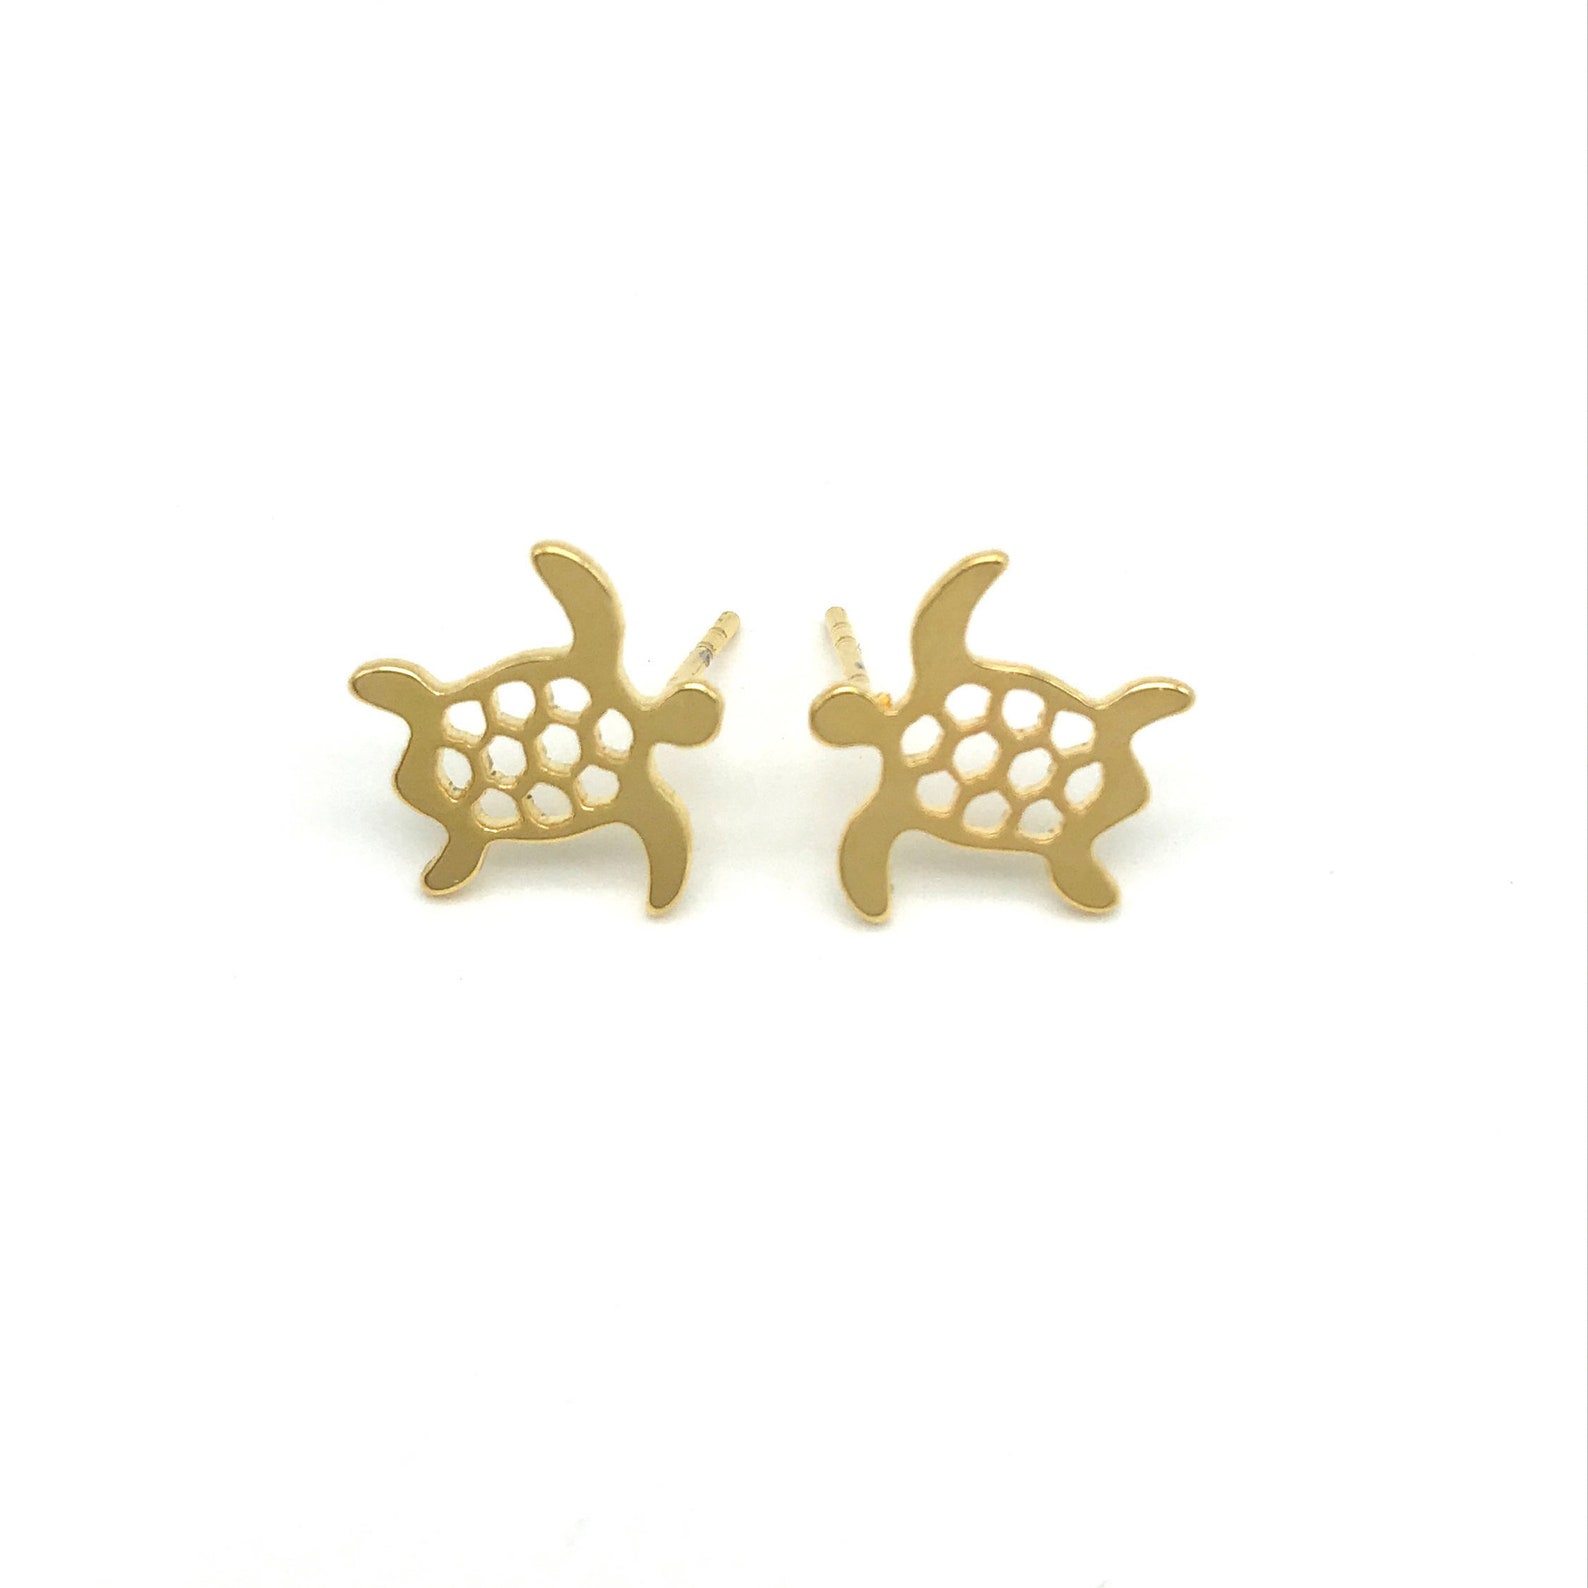 SEA TURTLE EARRINGS Gold Earrings cute earrings Stud | Etsy